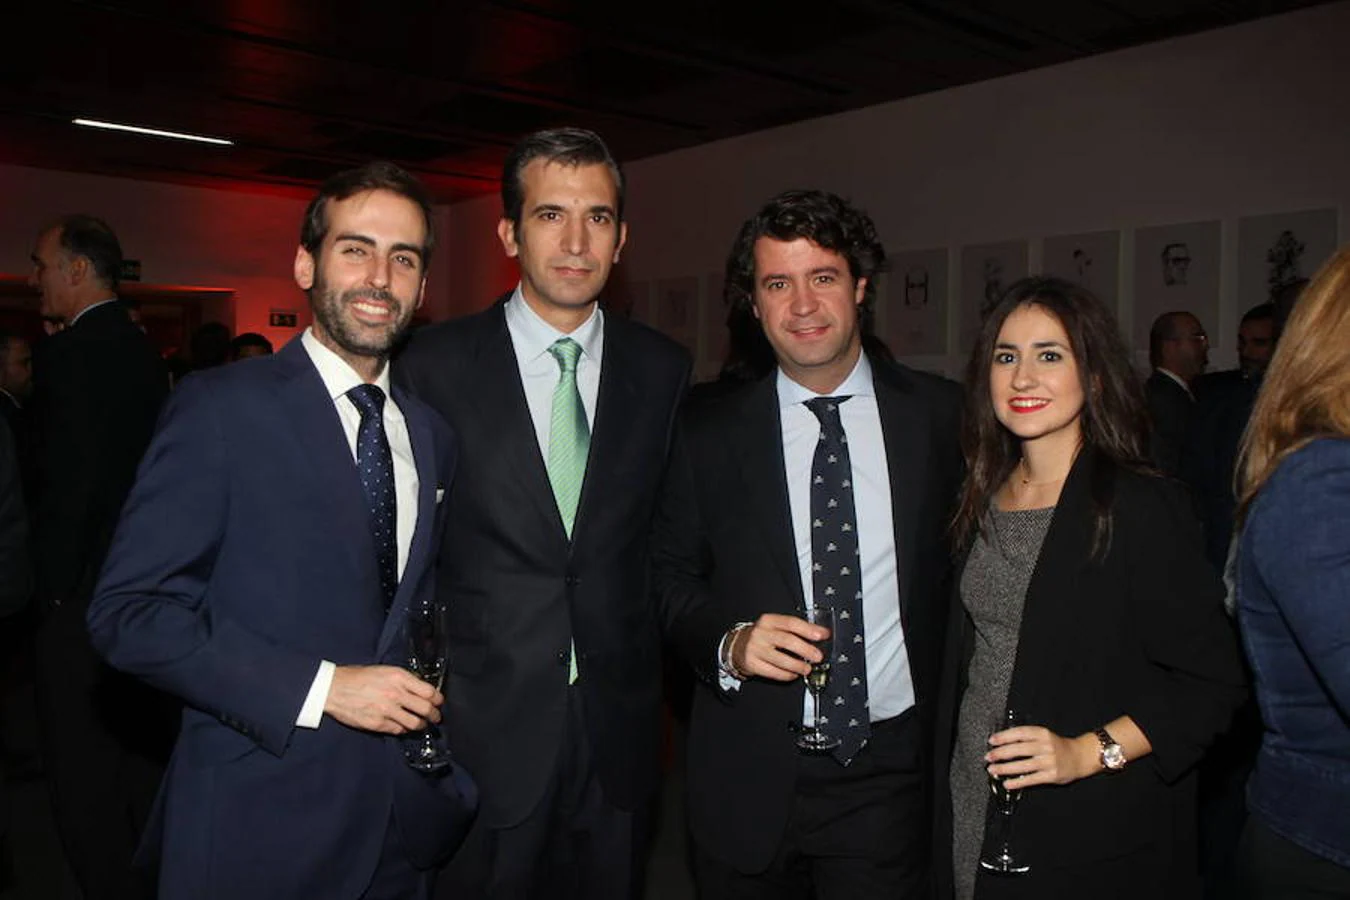 Directivos de Goodyear: JesúsPastor, Rafael Poyo, Hector Ares y Elixabet Sierra, durante la gala del Premio ABC al Mejor Coche del Año 2017